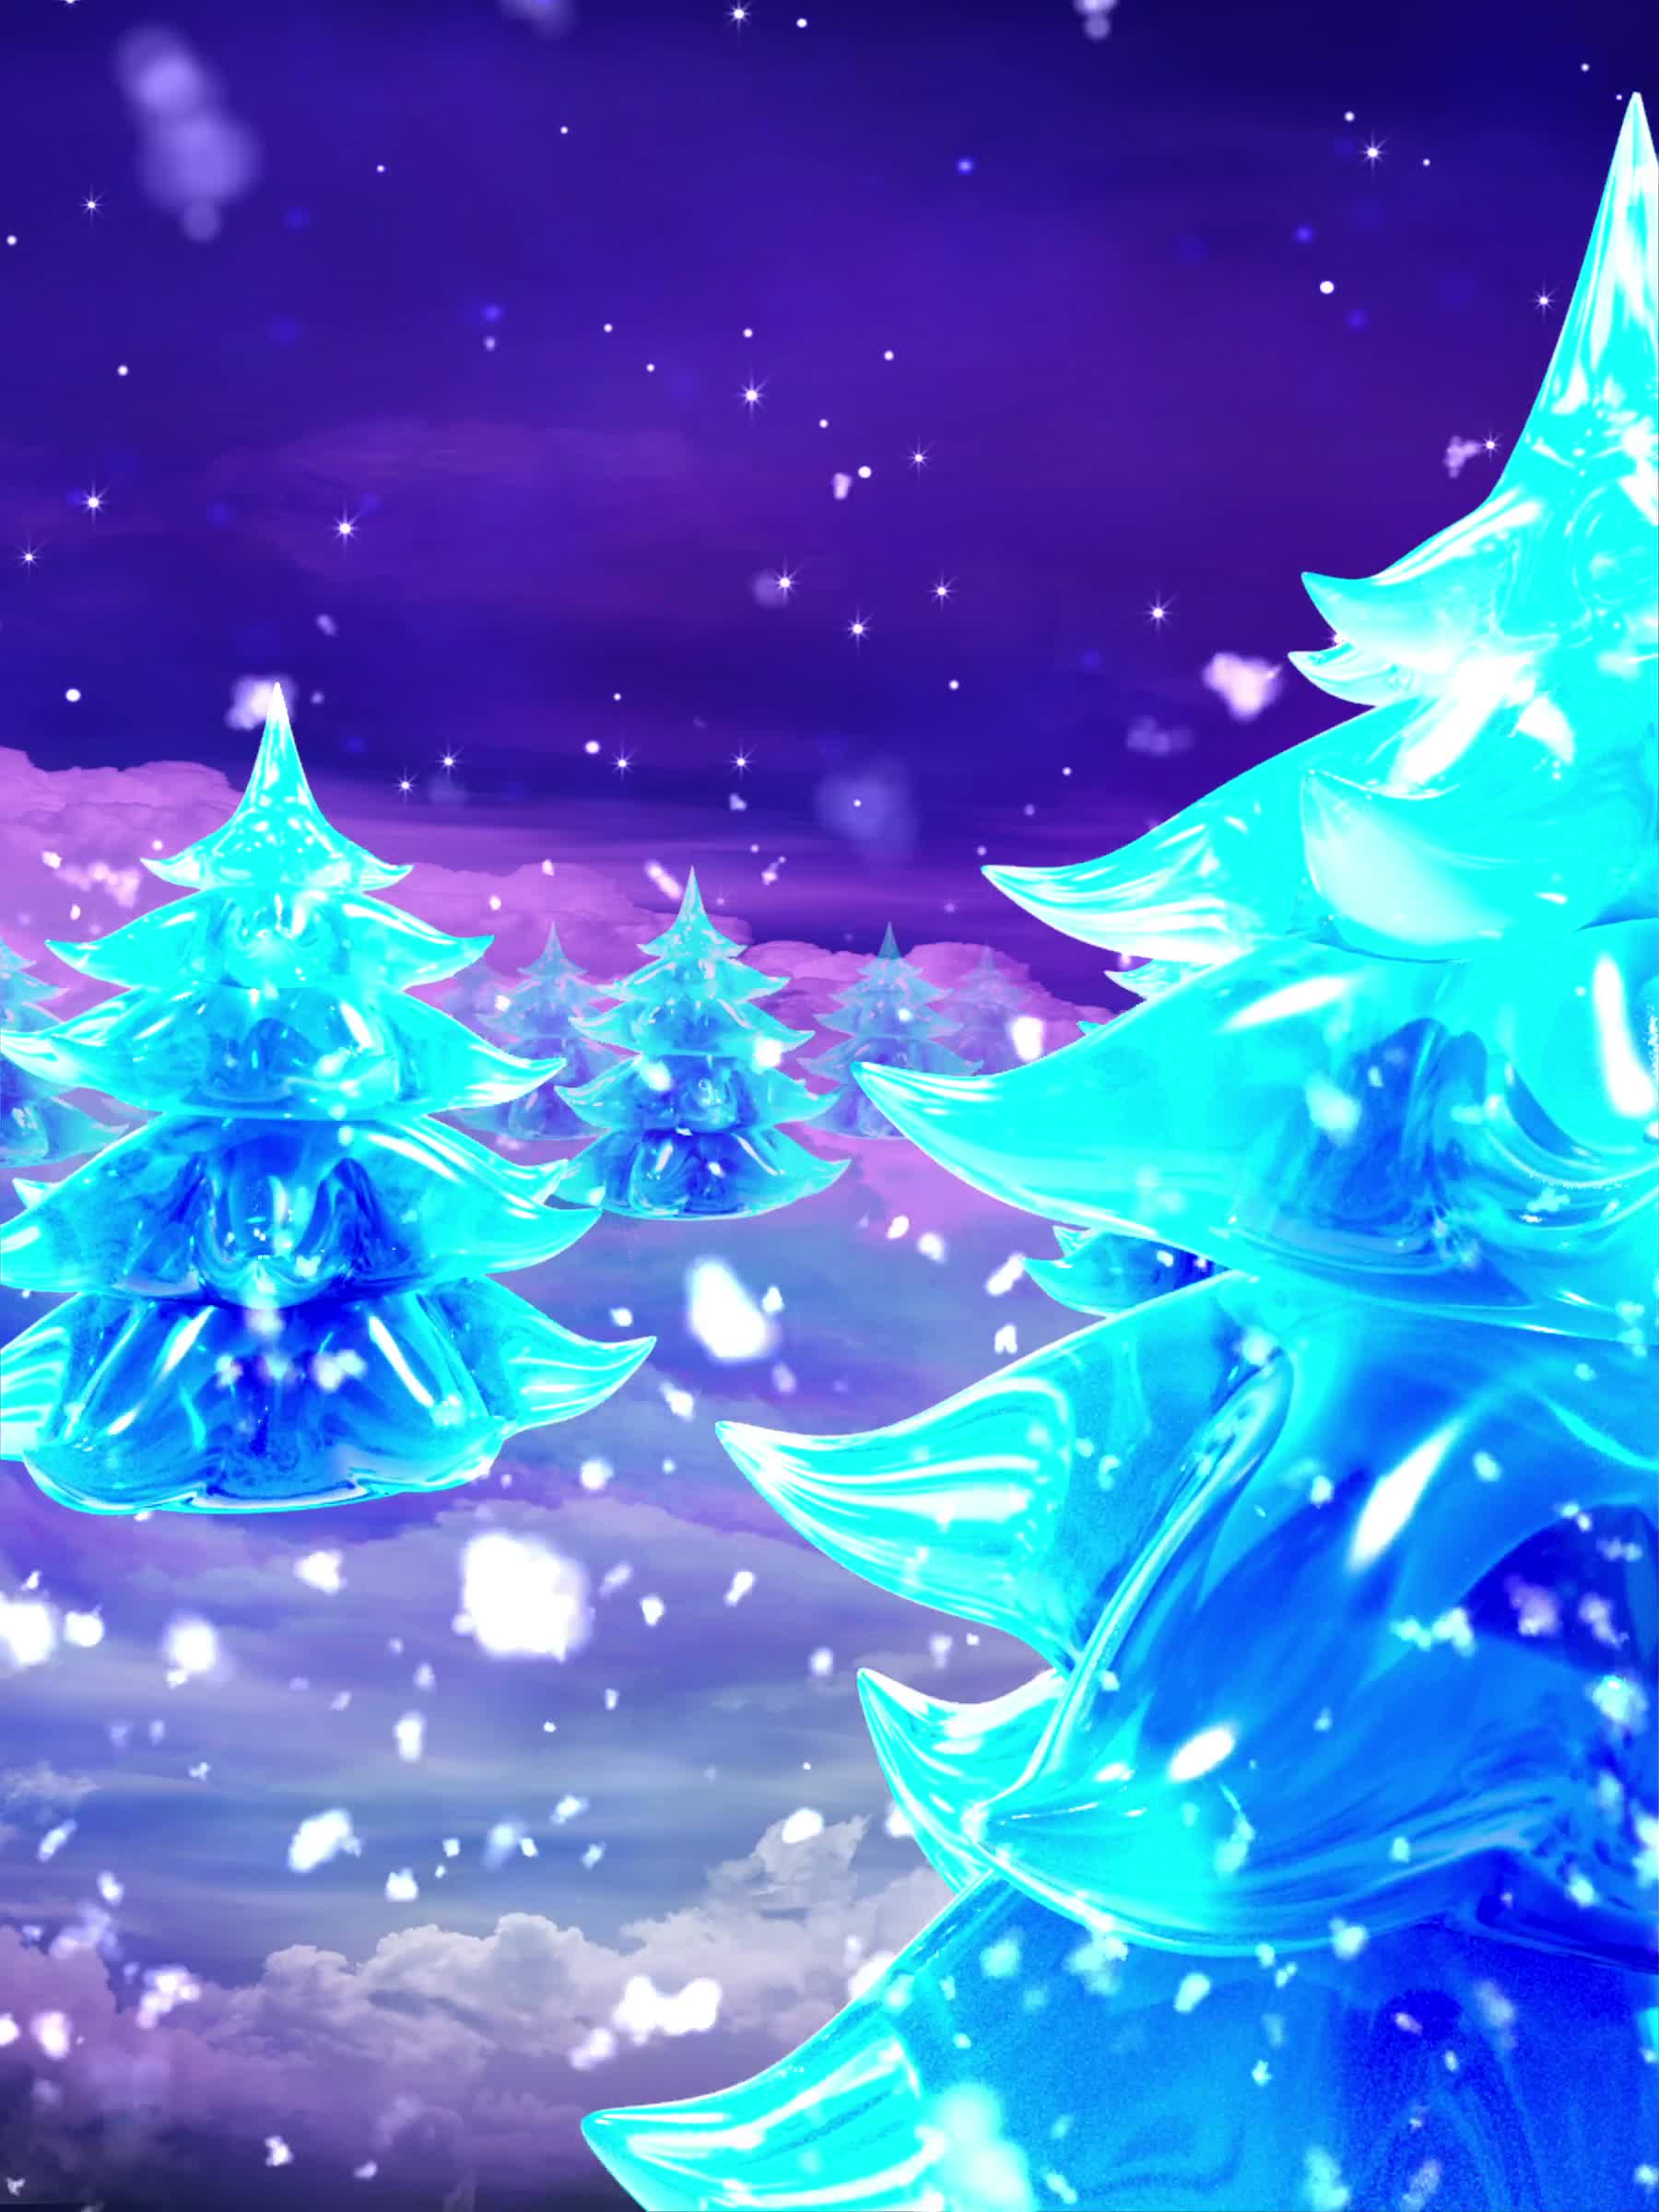 水晶树雪景冲屏